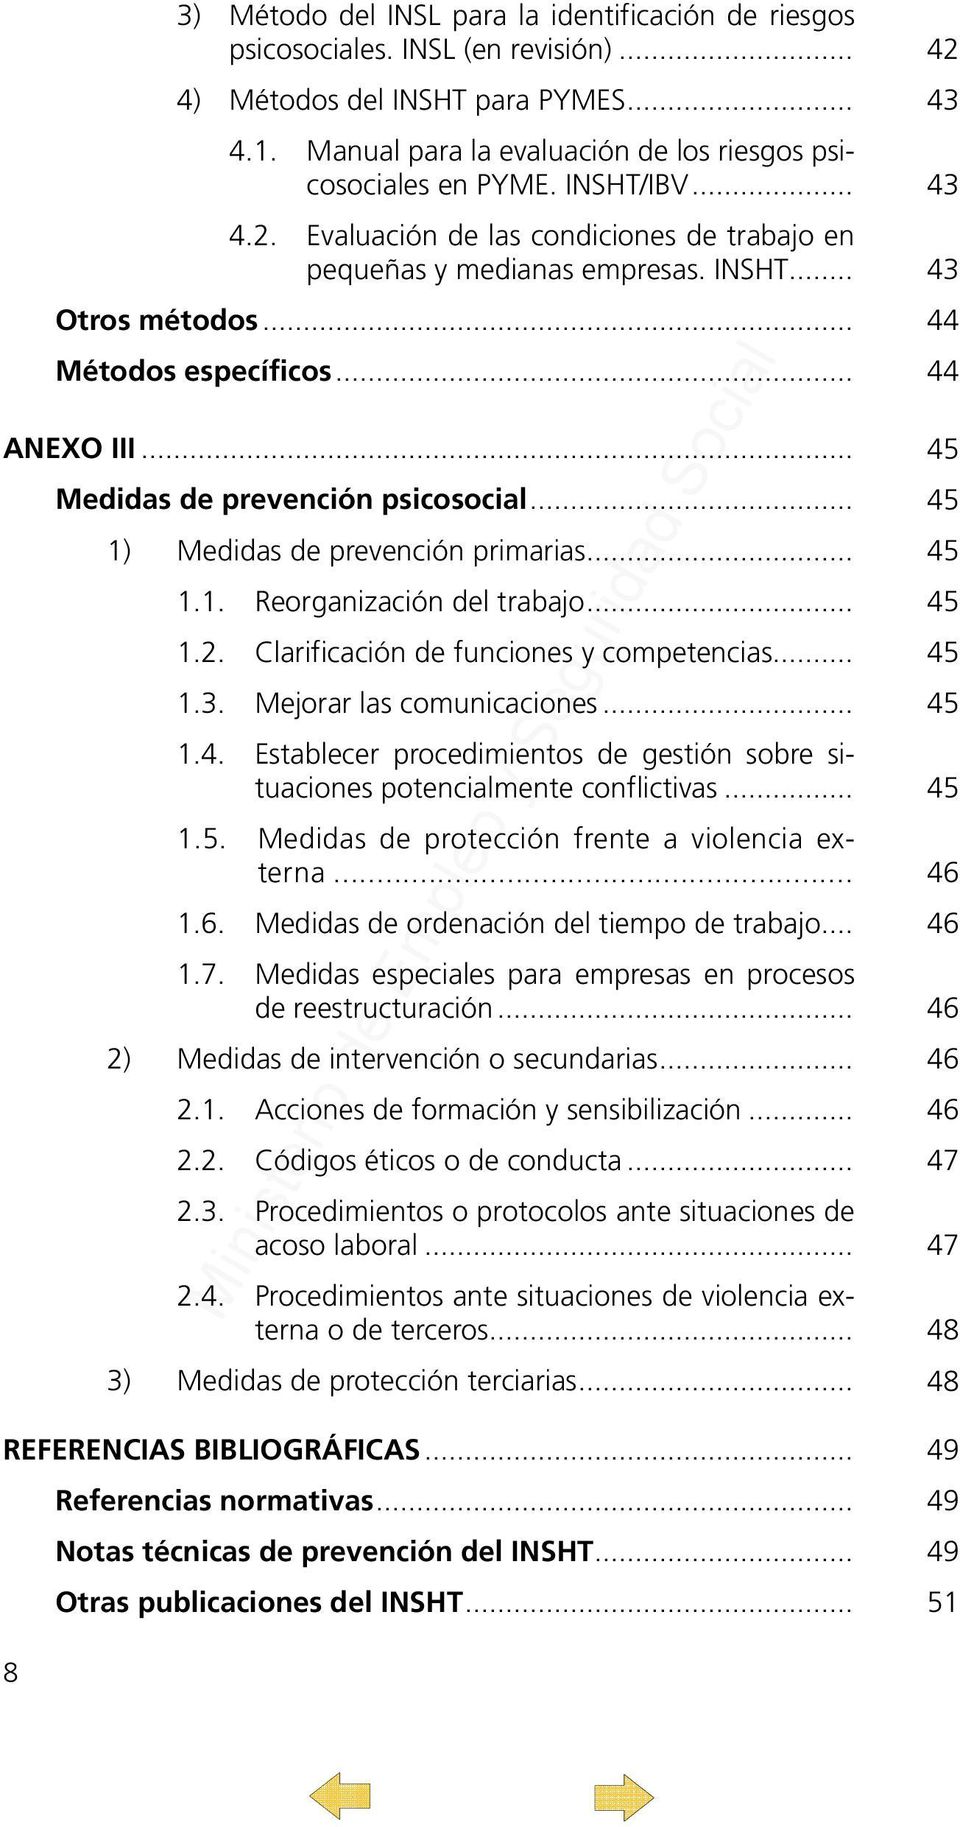 .. 44 Métodos específicos... 44 ANEXO III... 45 Medidas de prevención psicosocial... 45 1) Medidas de prevención primarias... 45 1.1. Reorganización del trabajo... 45 1.2.